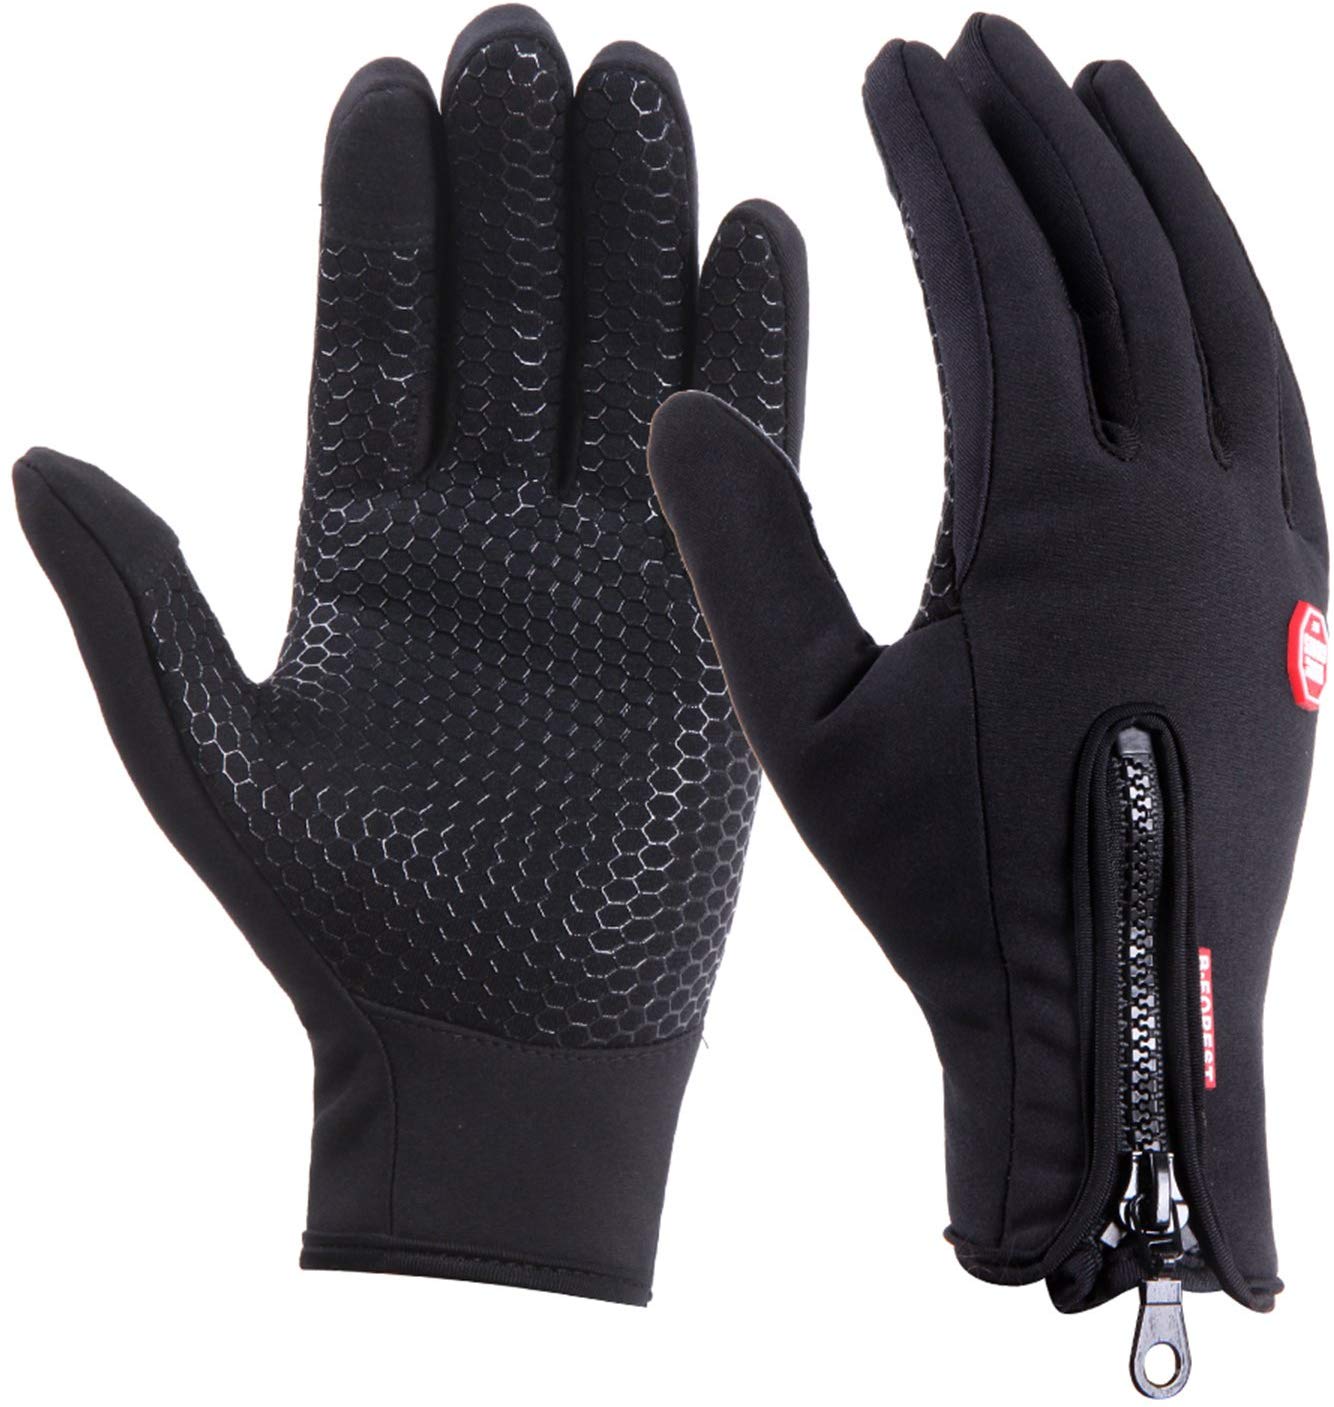 Winter Handschuhe Fahrradhandschuhe Warm Winddicht Touchscreen Herren Damen DHL 